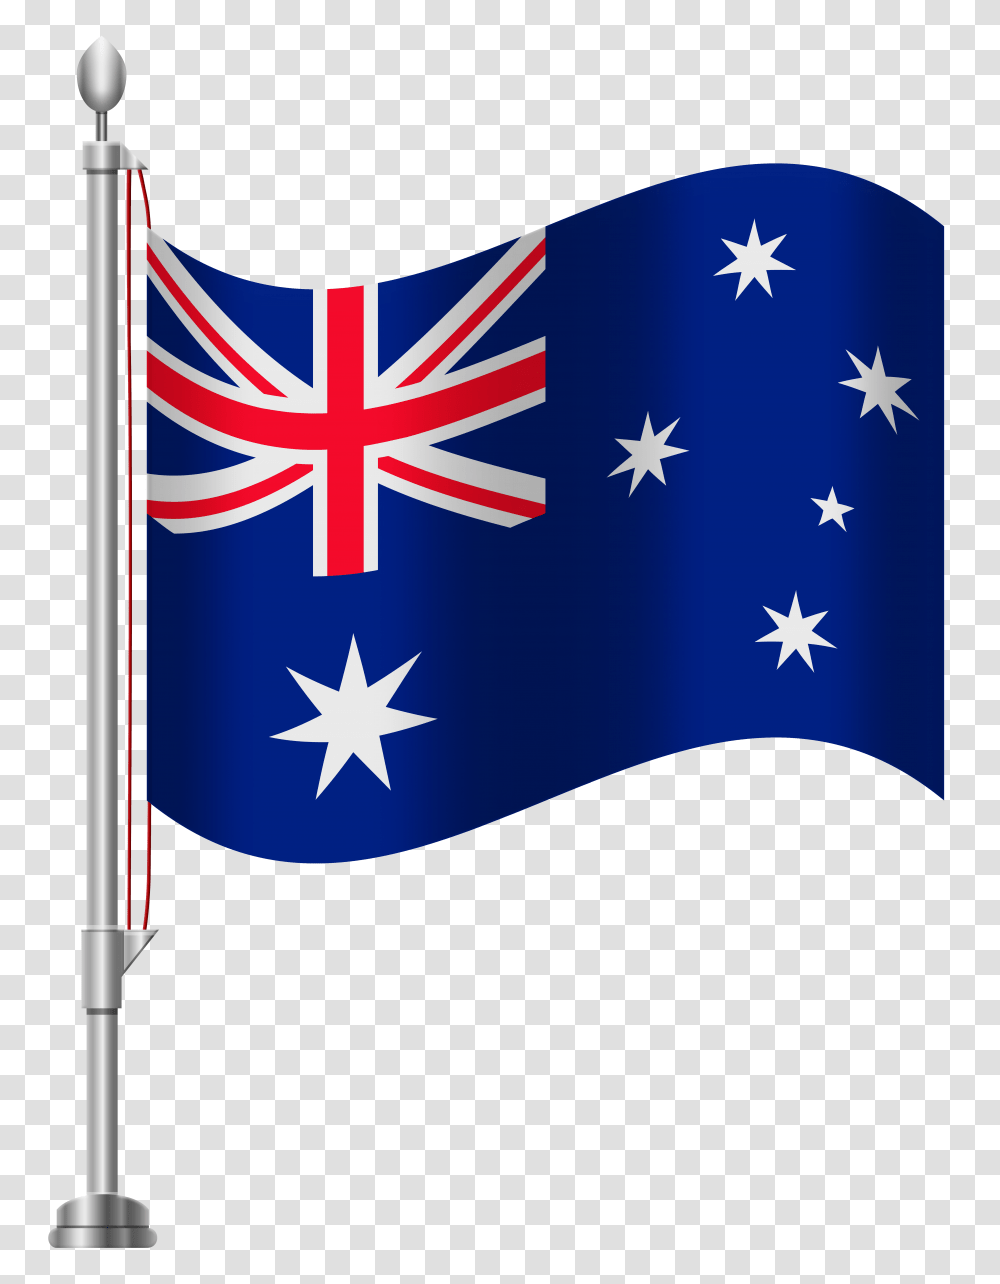 Australia Flag Clip Art, Apparel, American Flag Transparent Png